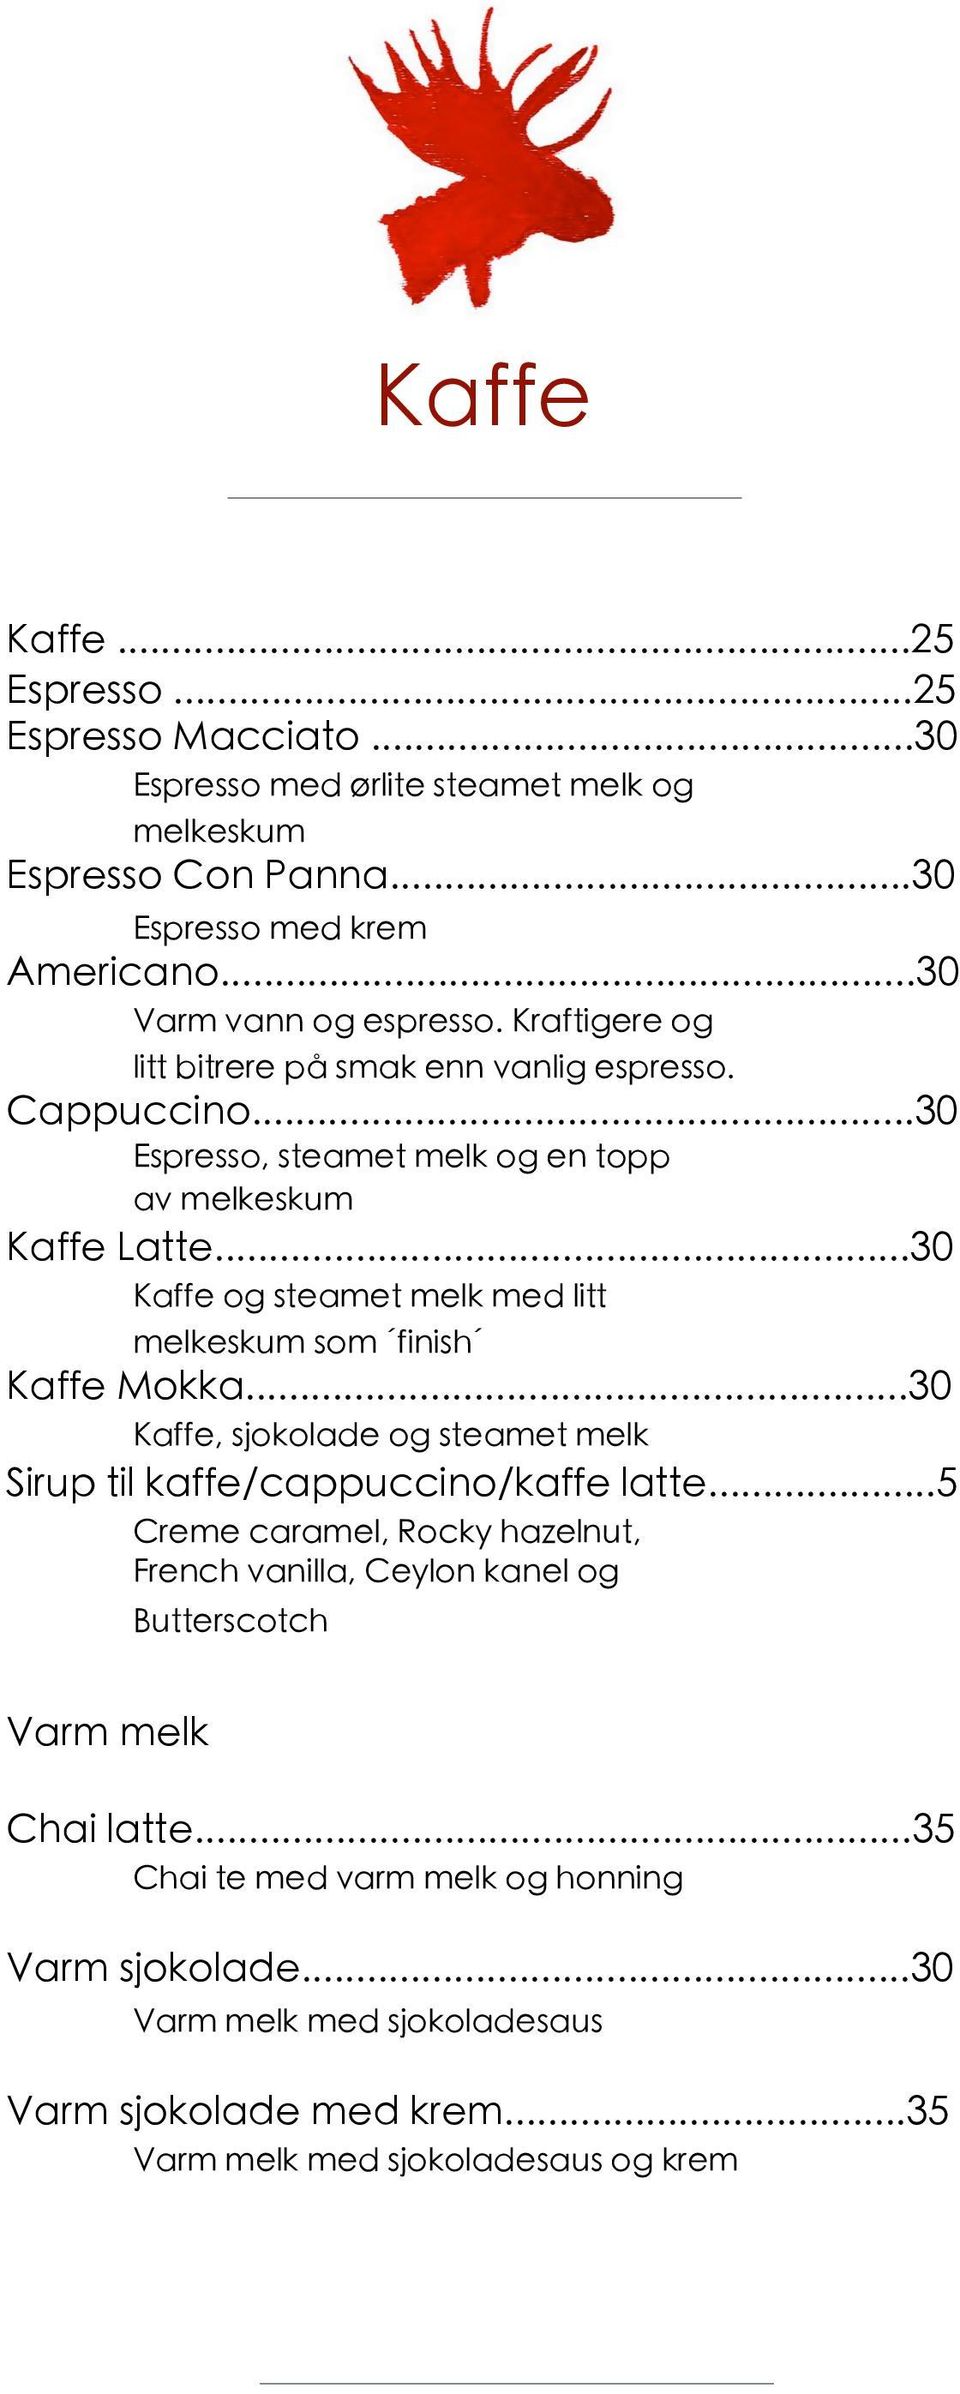 ..30 Kaffe og steamet melk med litt melkeskum som finish Kaffe Mokka...30 Kaffe, sjokolade og steamet melk Sirup til kaffe/cappuccino/kaffe latte.